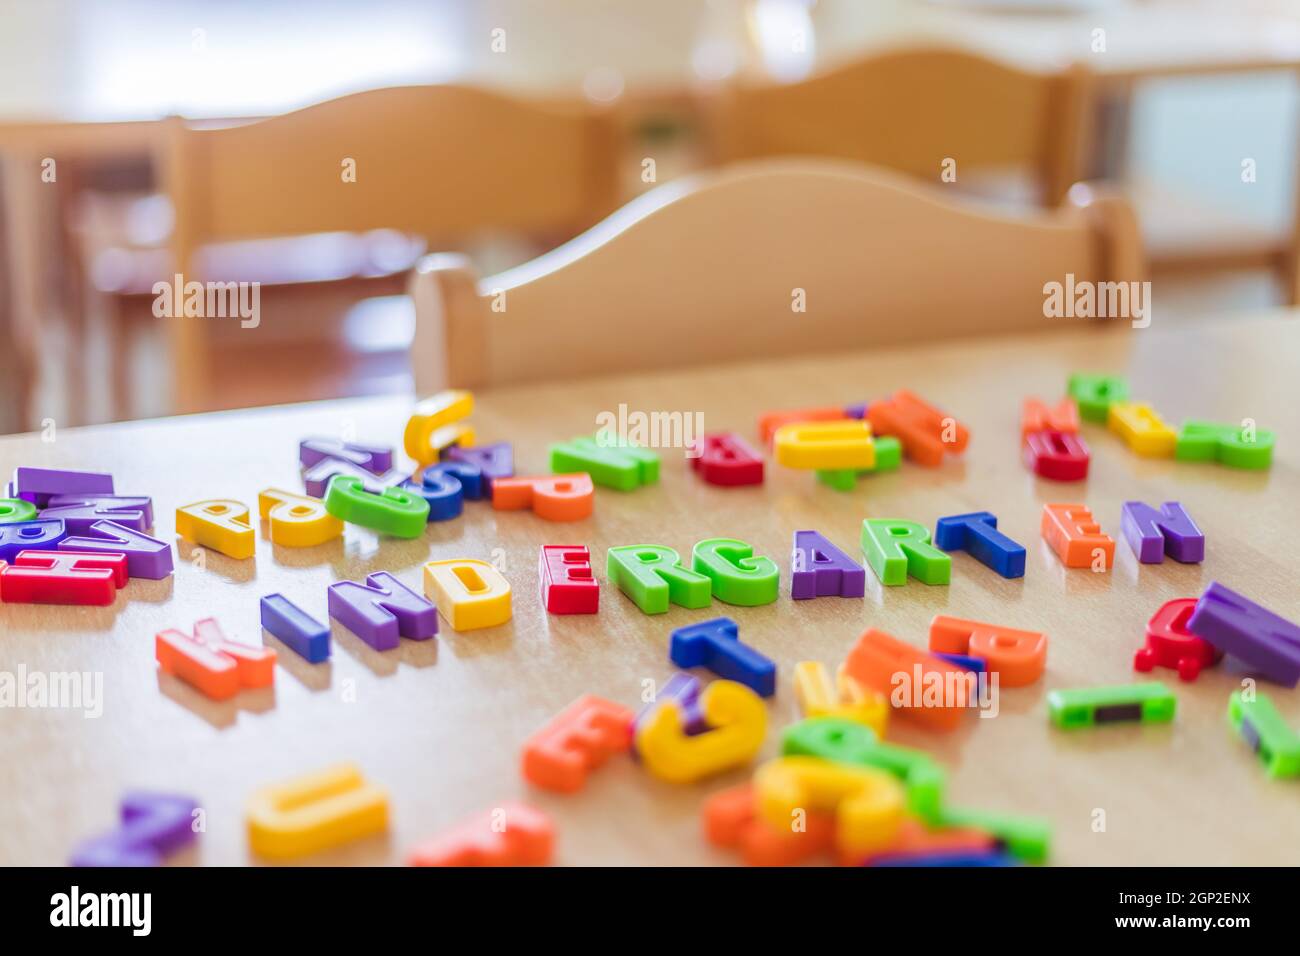 Lettere colorate con la parola "Kindergarten" Foto Stock